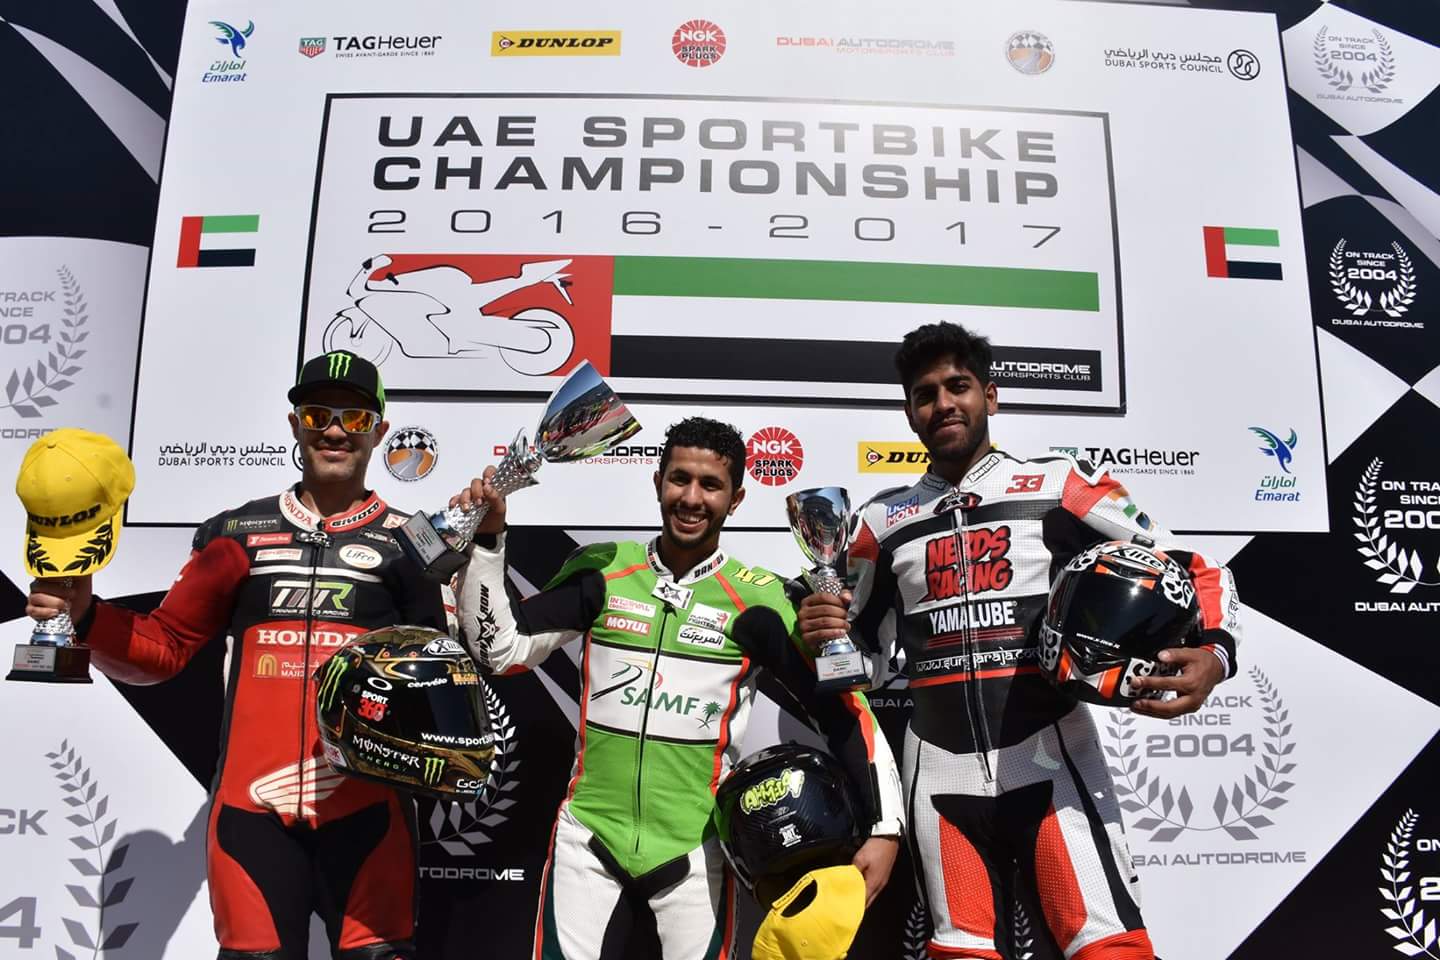 السعودي “احمد المعيني” يحقق المركز الأول في سباق الجولة الافتتاحية بطولة الامارات العربية المتحدة للدراجات النارية فئة السوبر سبورت